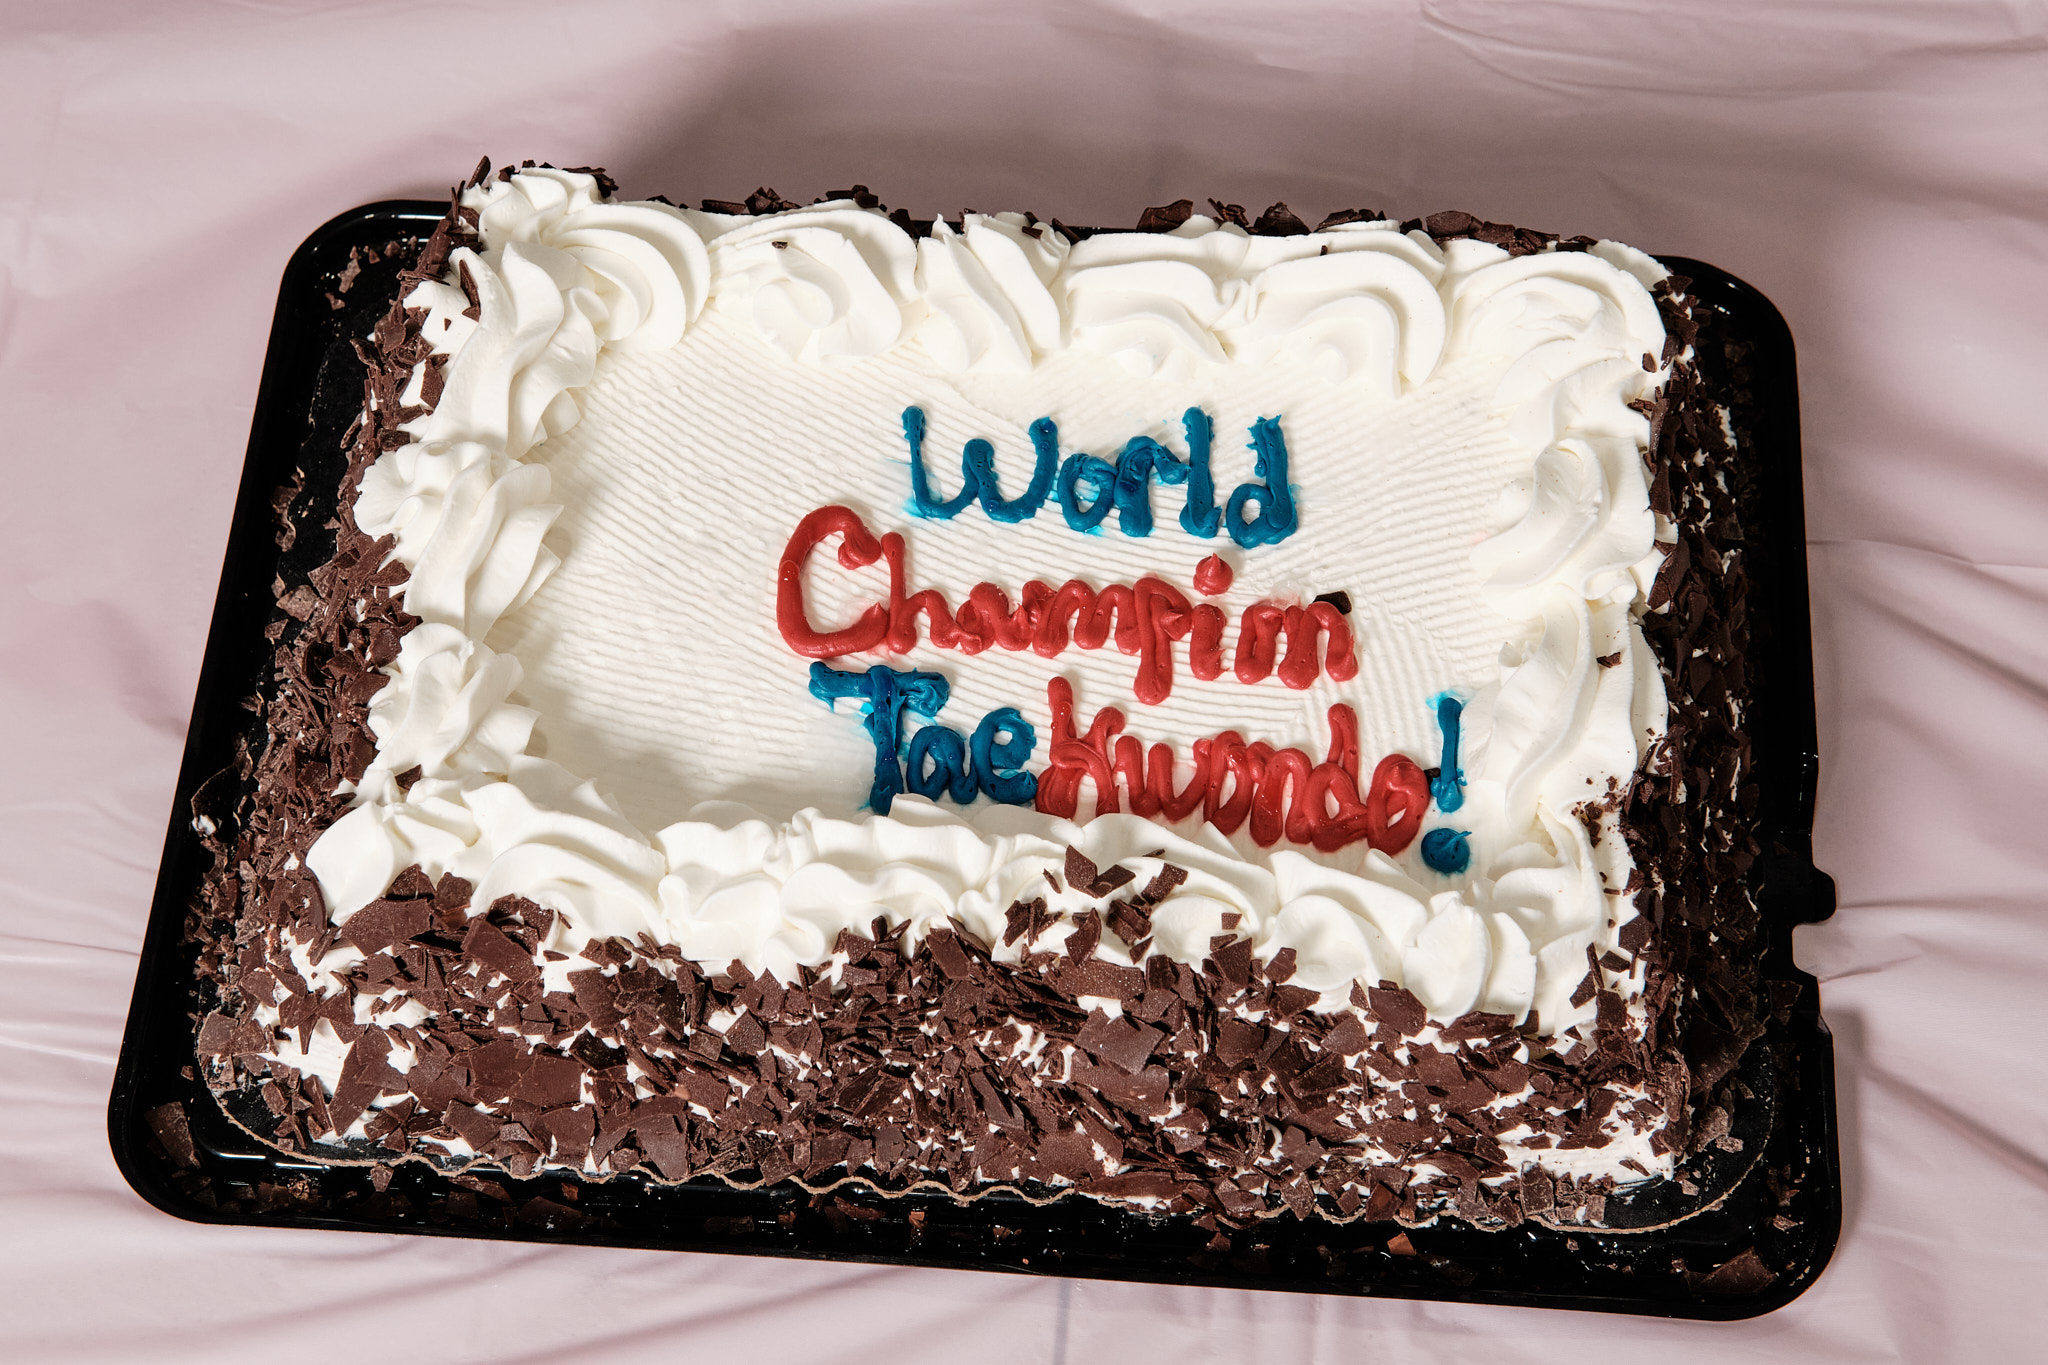 World Champion Taekwondo Birthday Parties